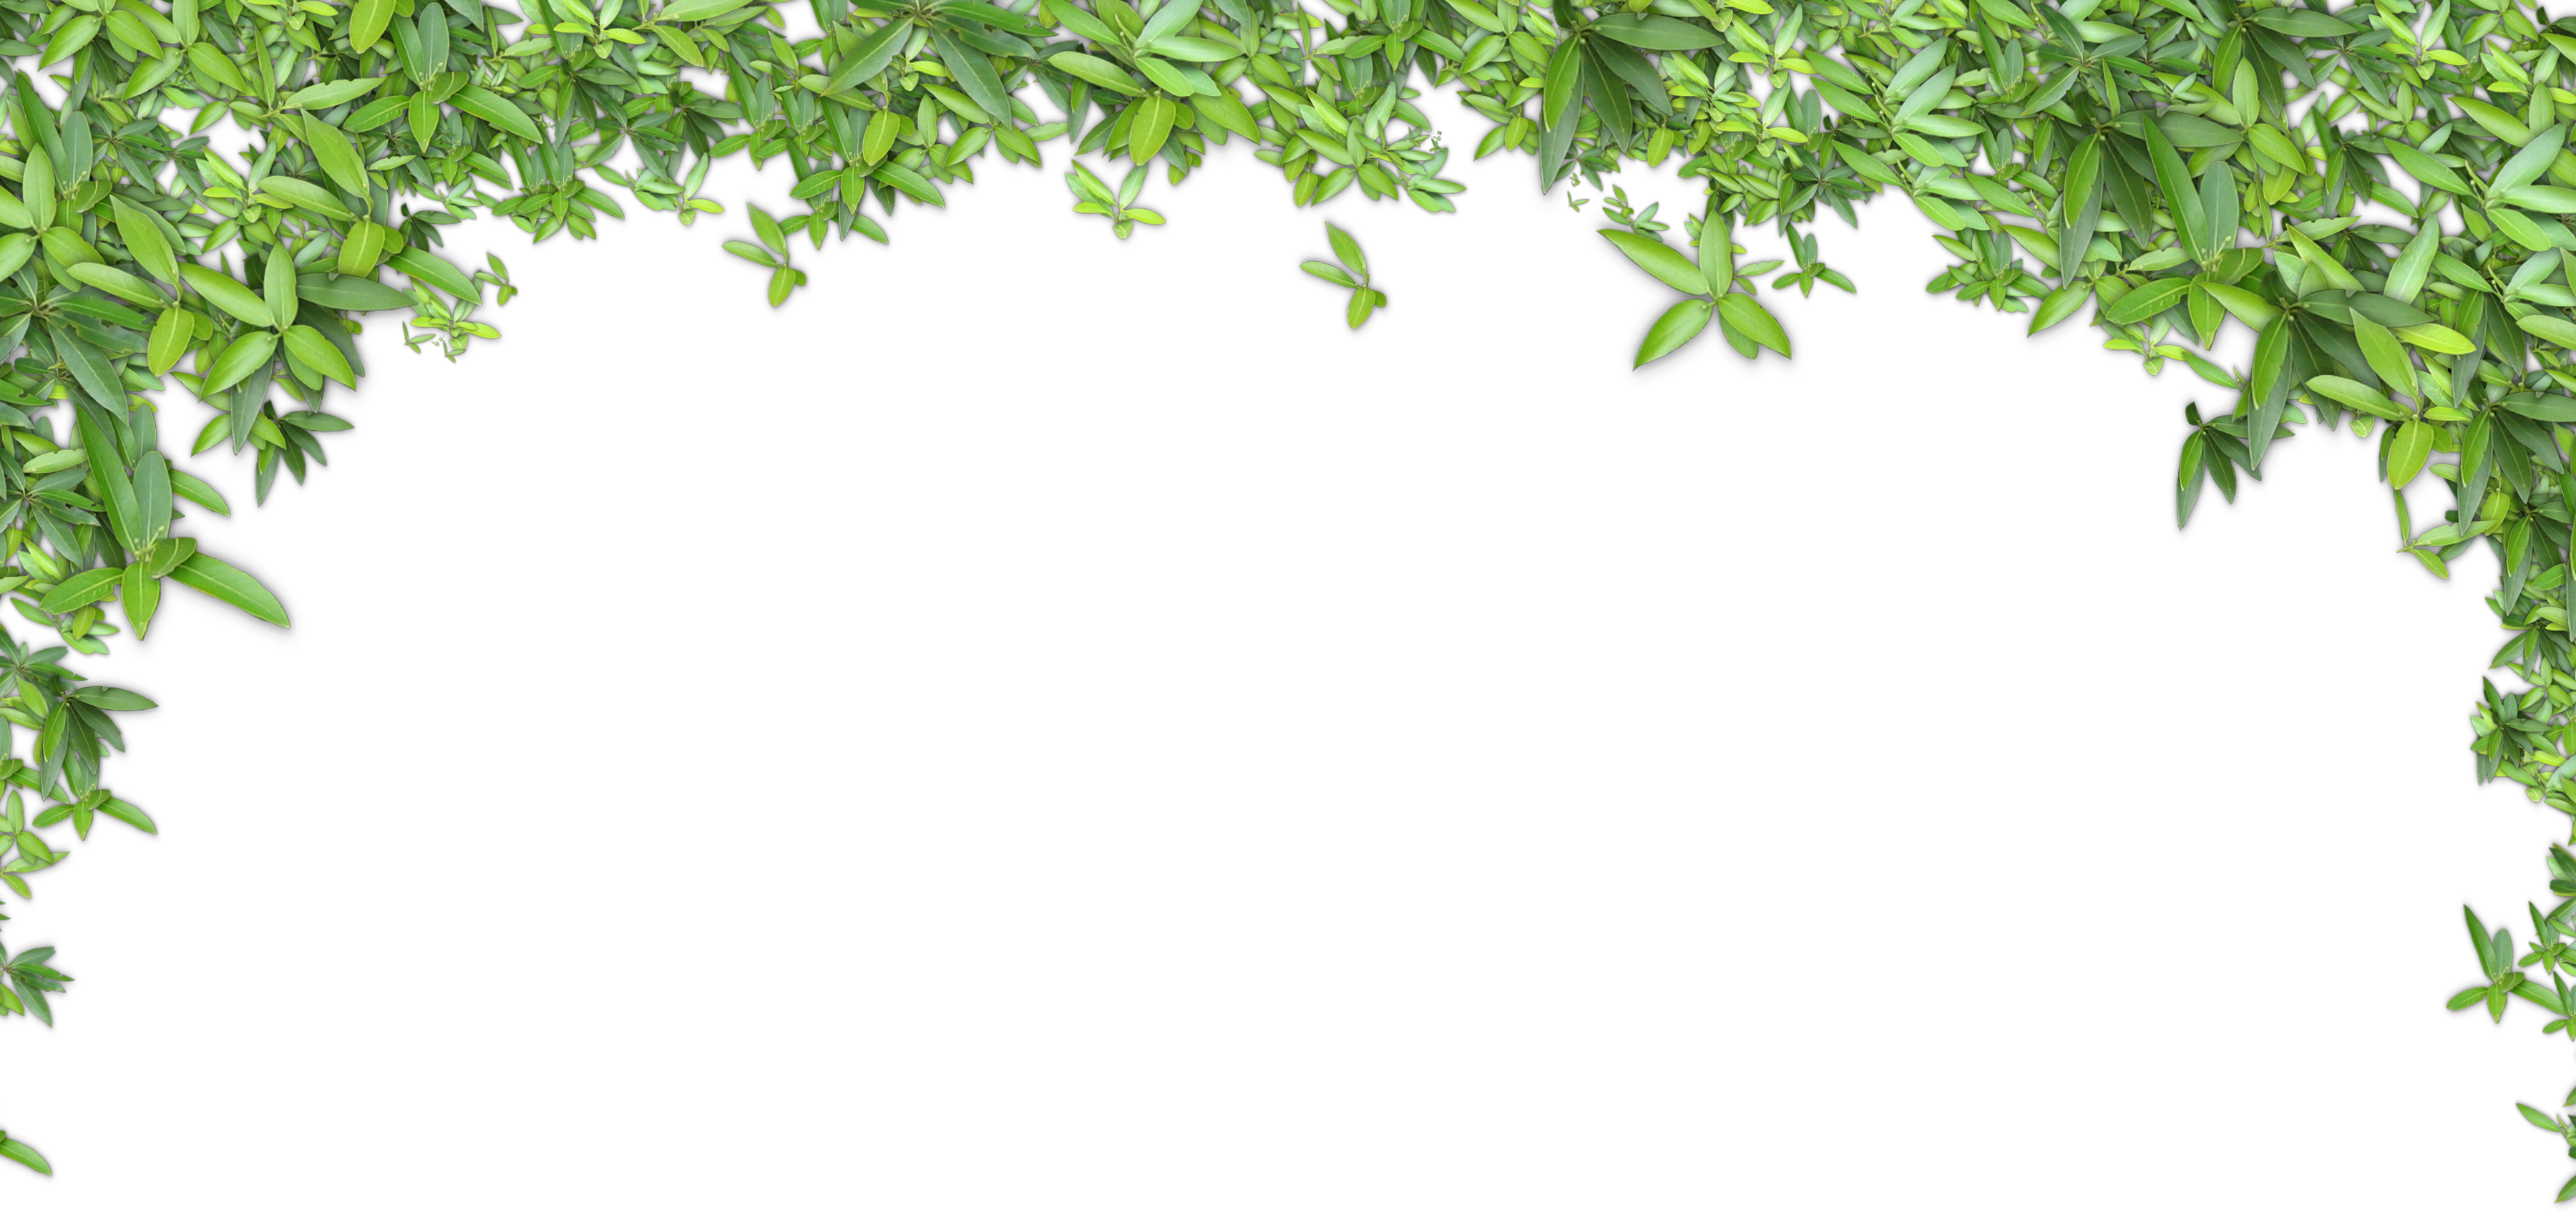 Green Leaves Background - Green Leaves Background (3600x1695)